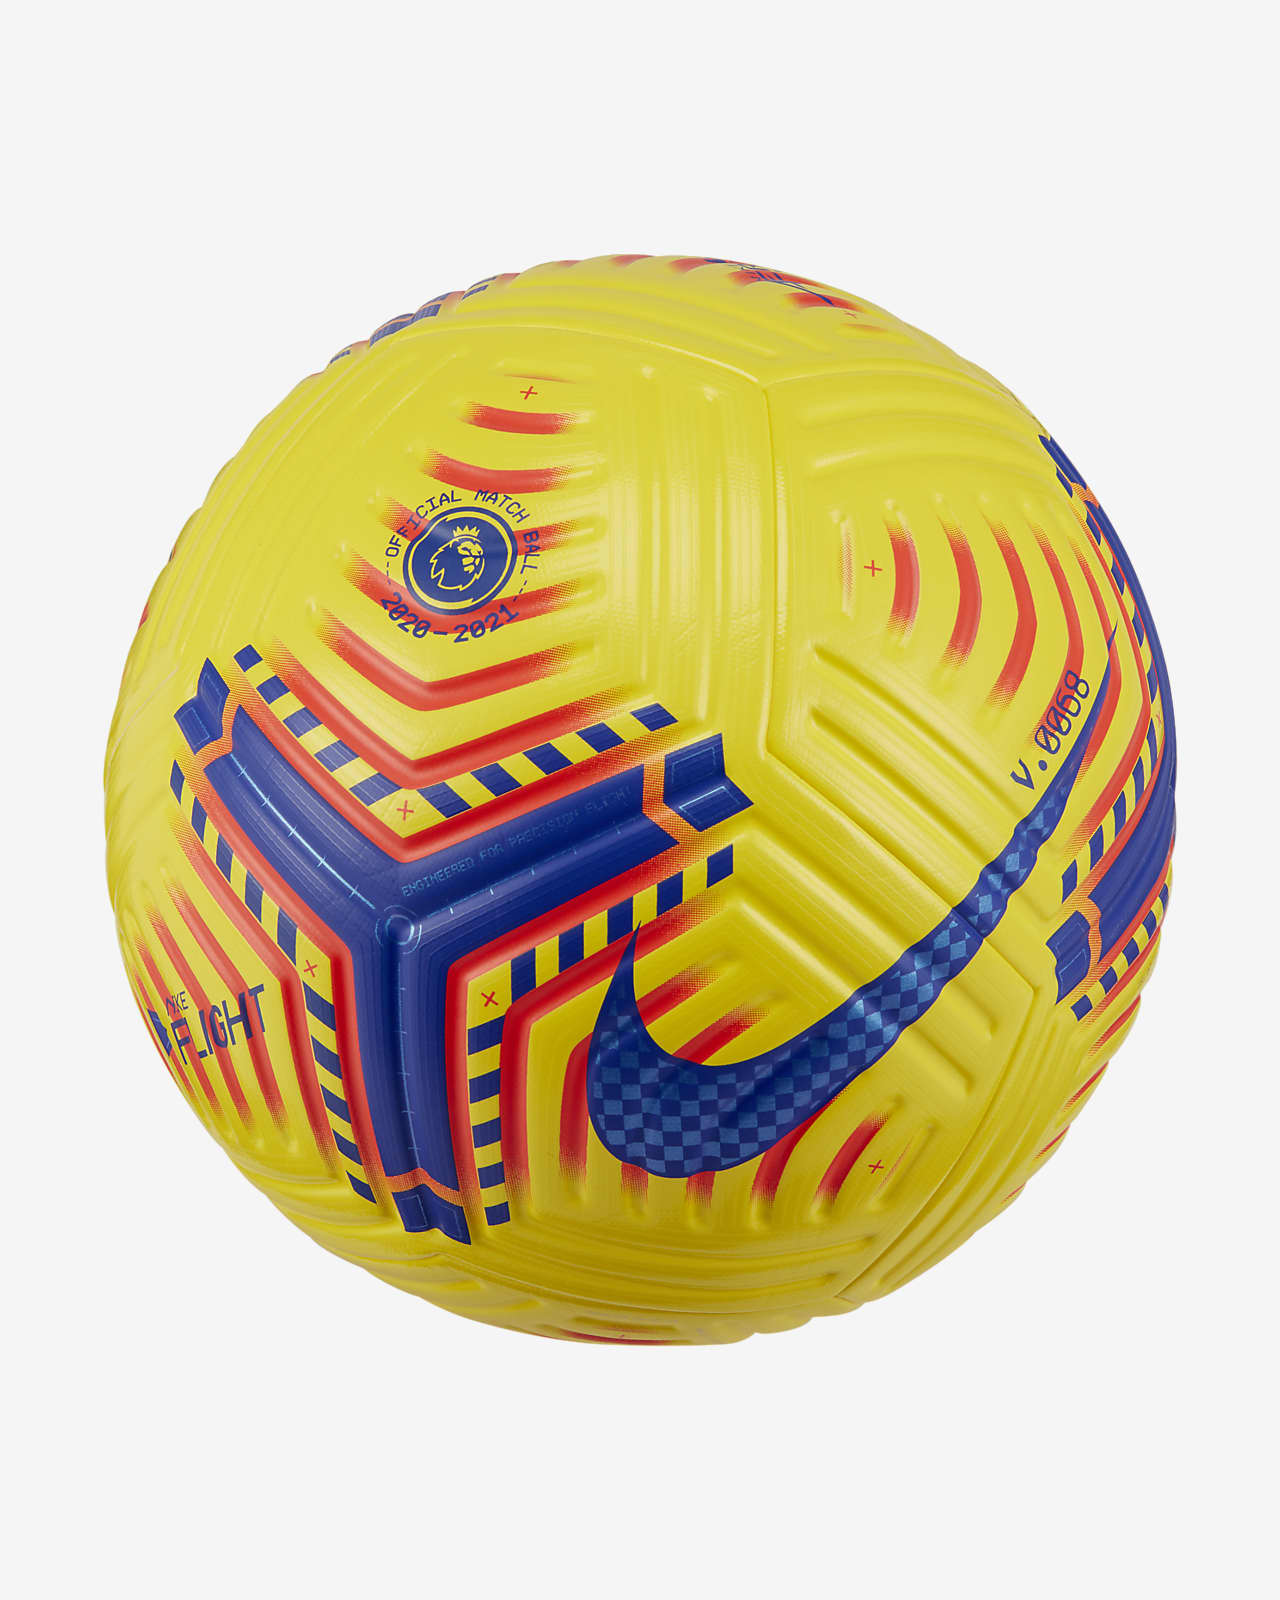 epl official match ball